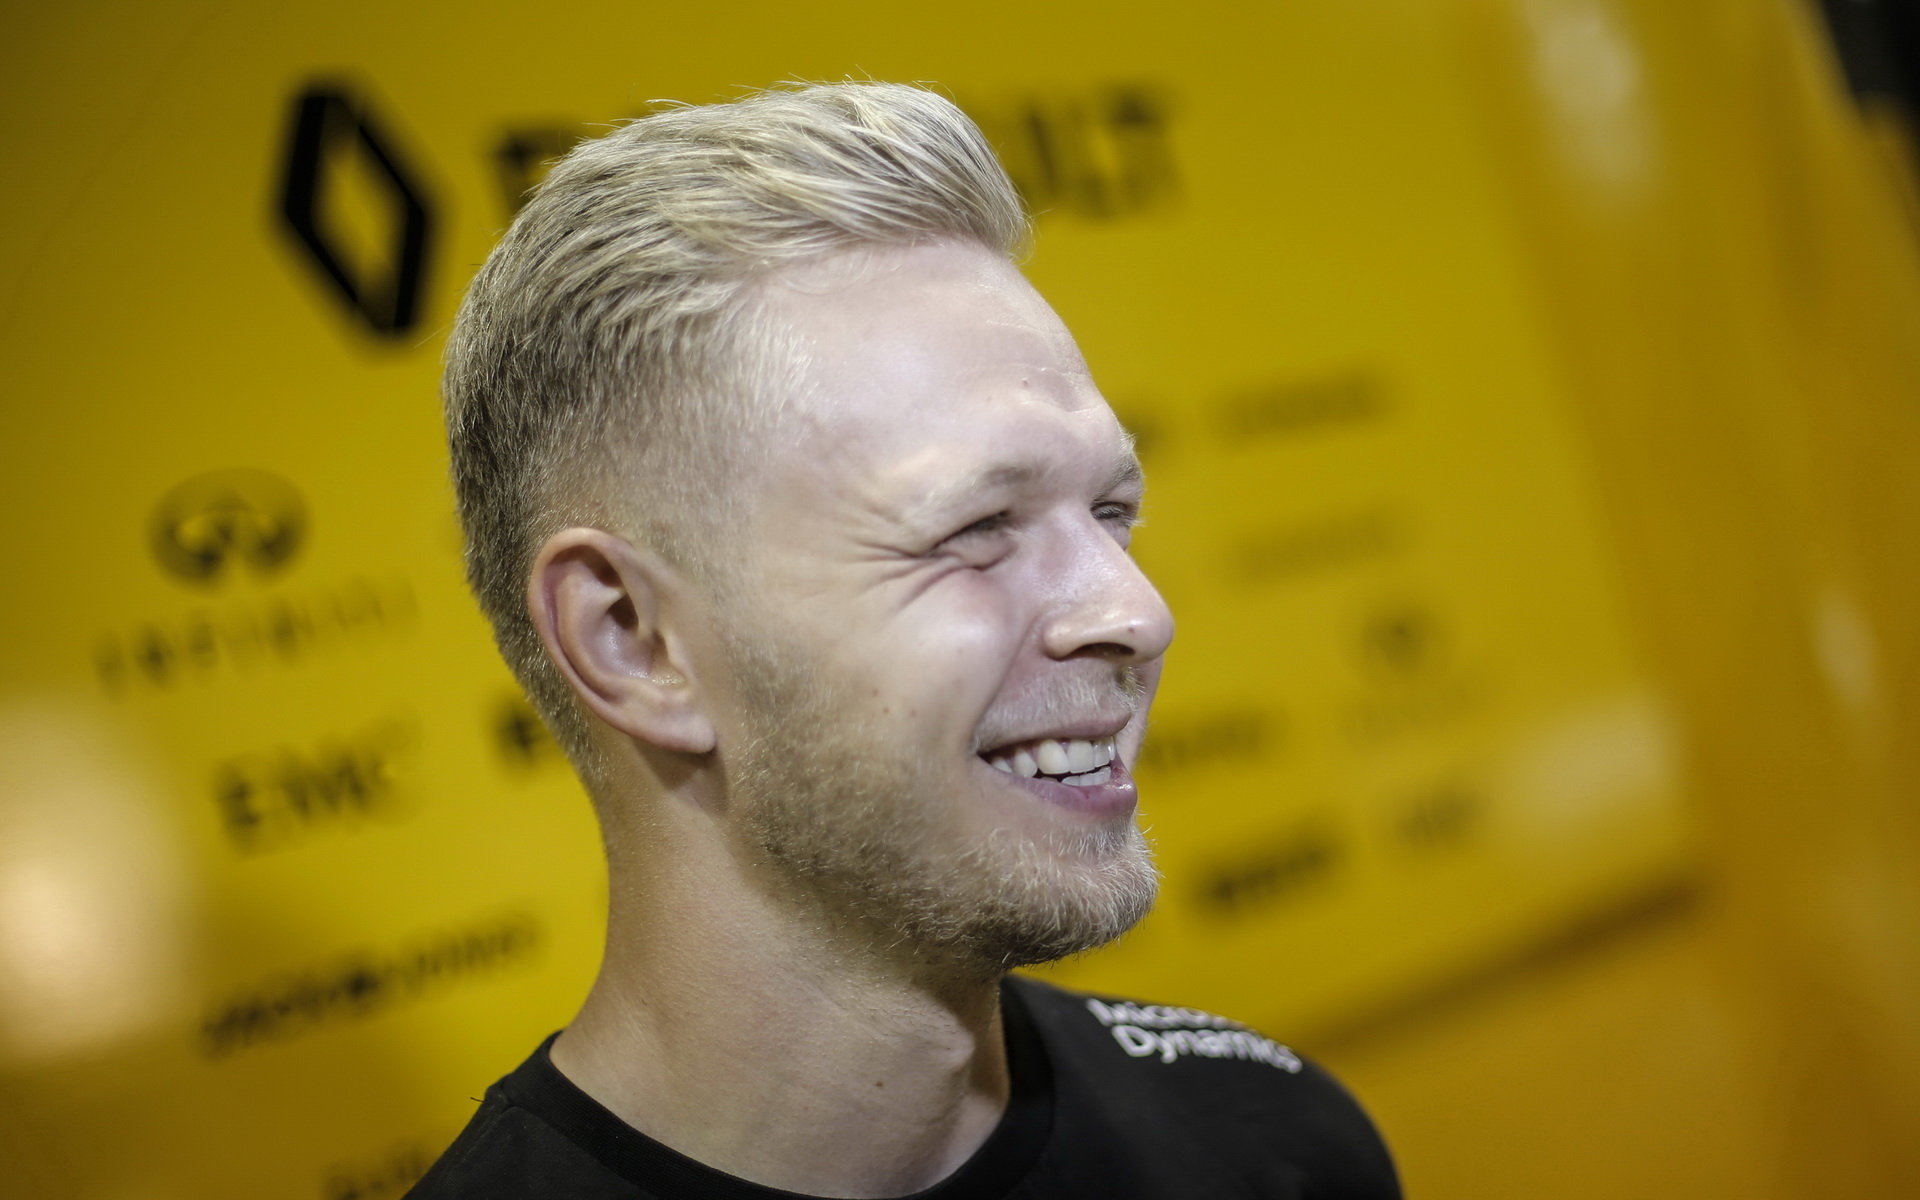 Magnussen zabodoval i bez vody, což mu vykouzlilo úsměv na tváři